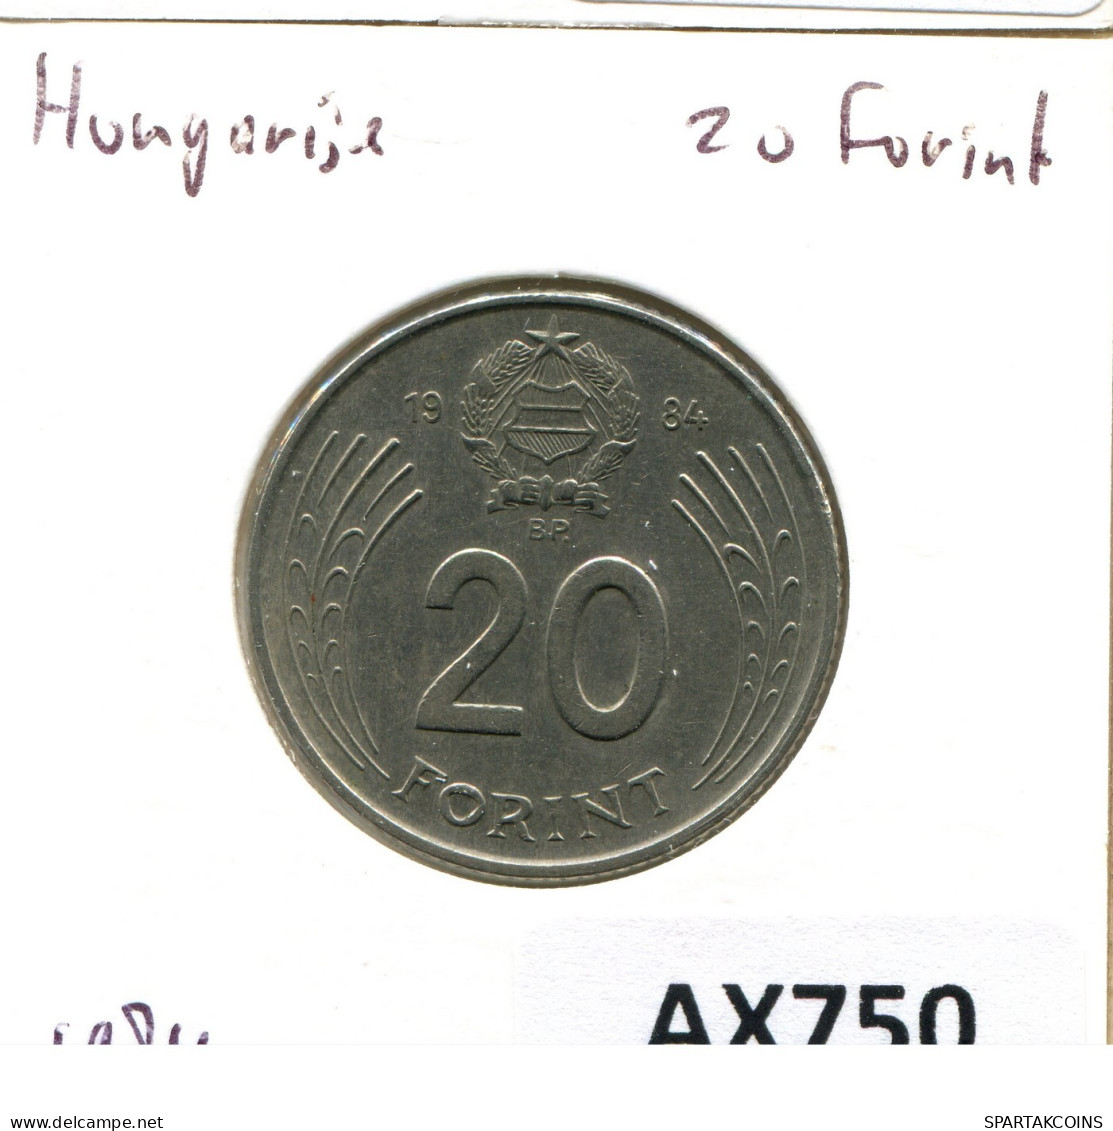 20 FORINT 1984 SIEBENBÜRGEN HUNGARY Münze #AX750.D.A - Ungheria